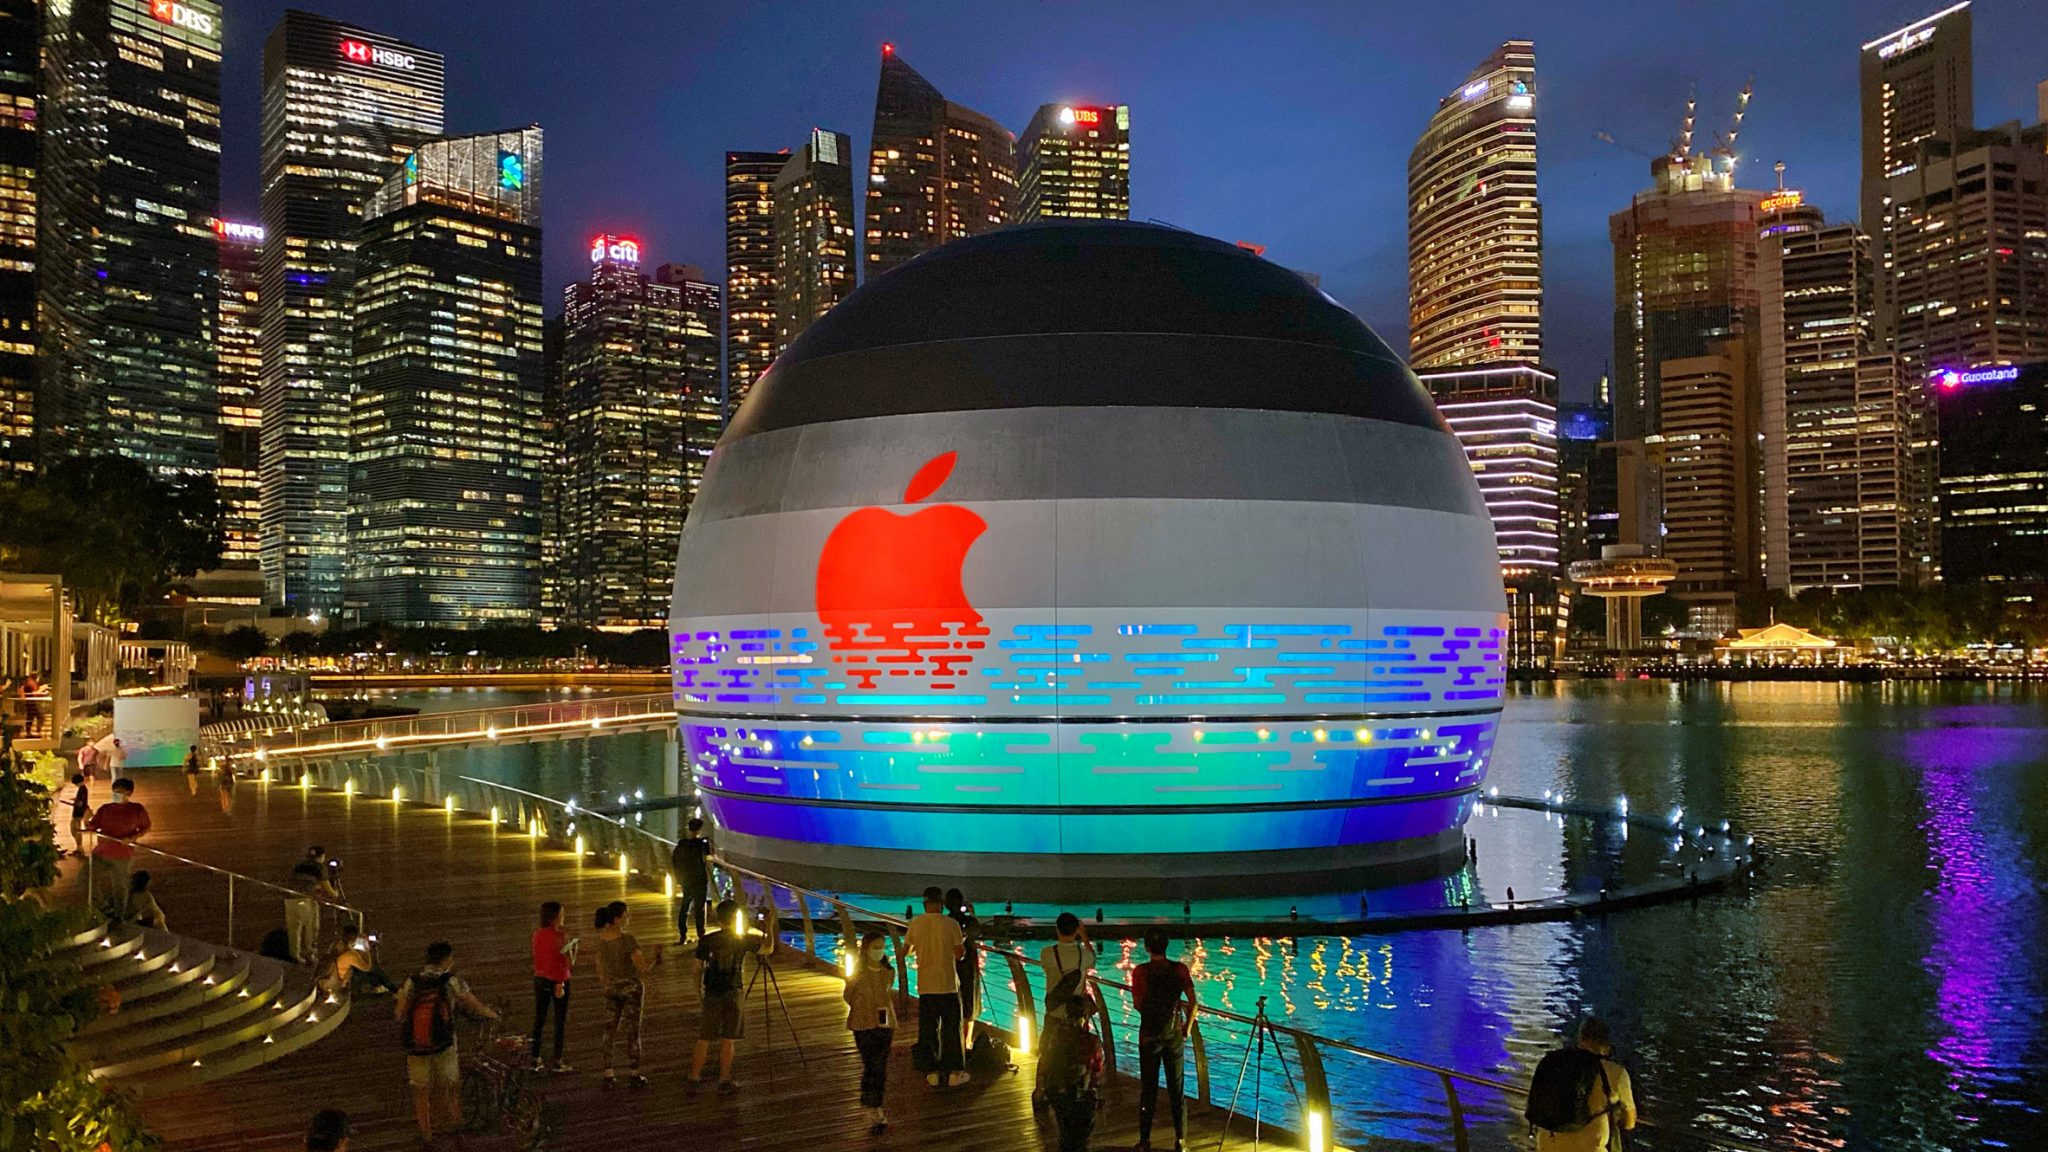 물 위에 떠있는 천구모양의 싱가폴 애플스토어 인스타그램서 화제